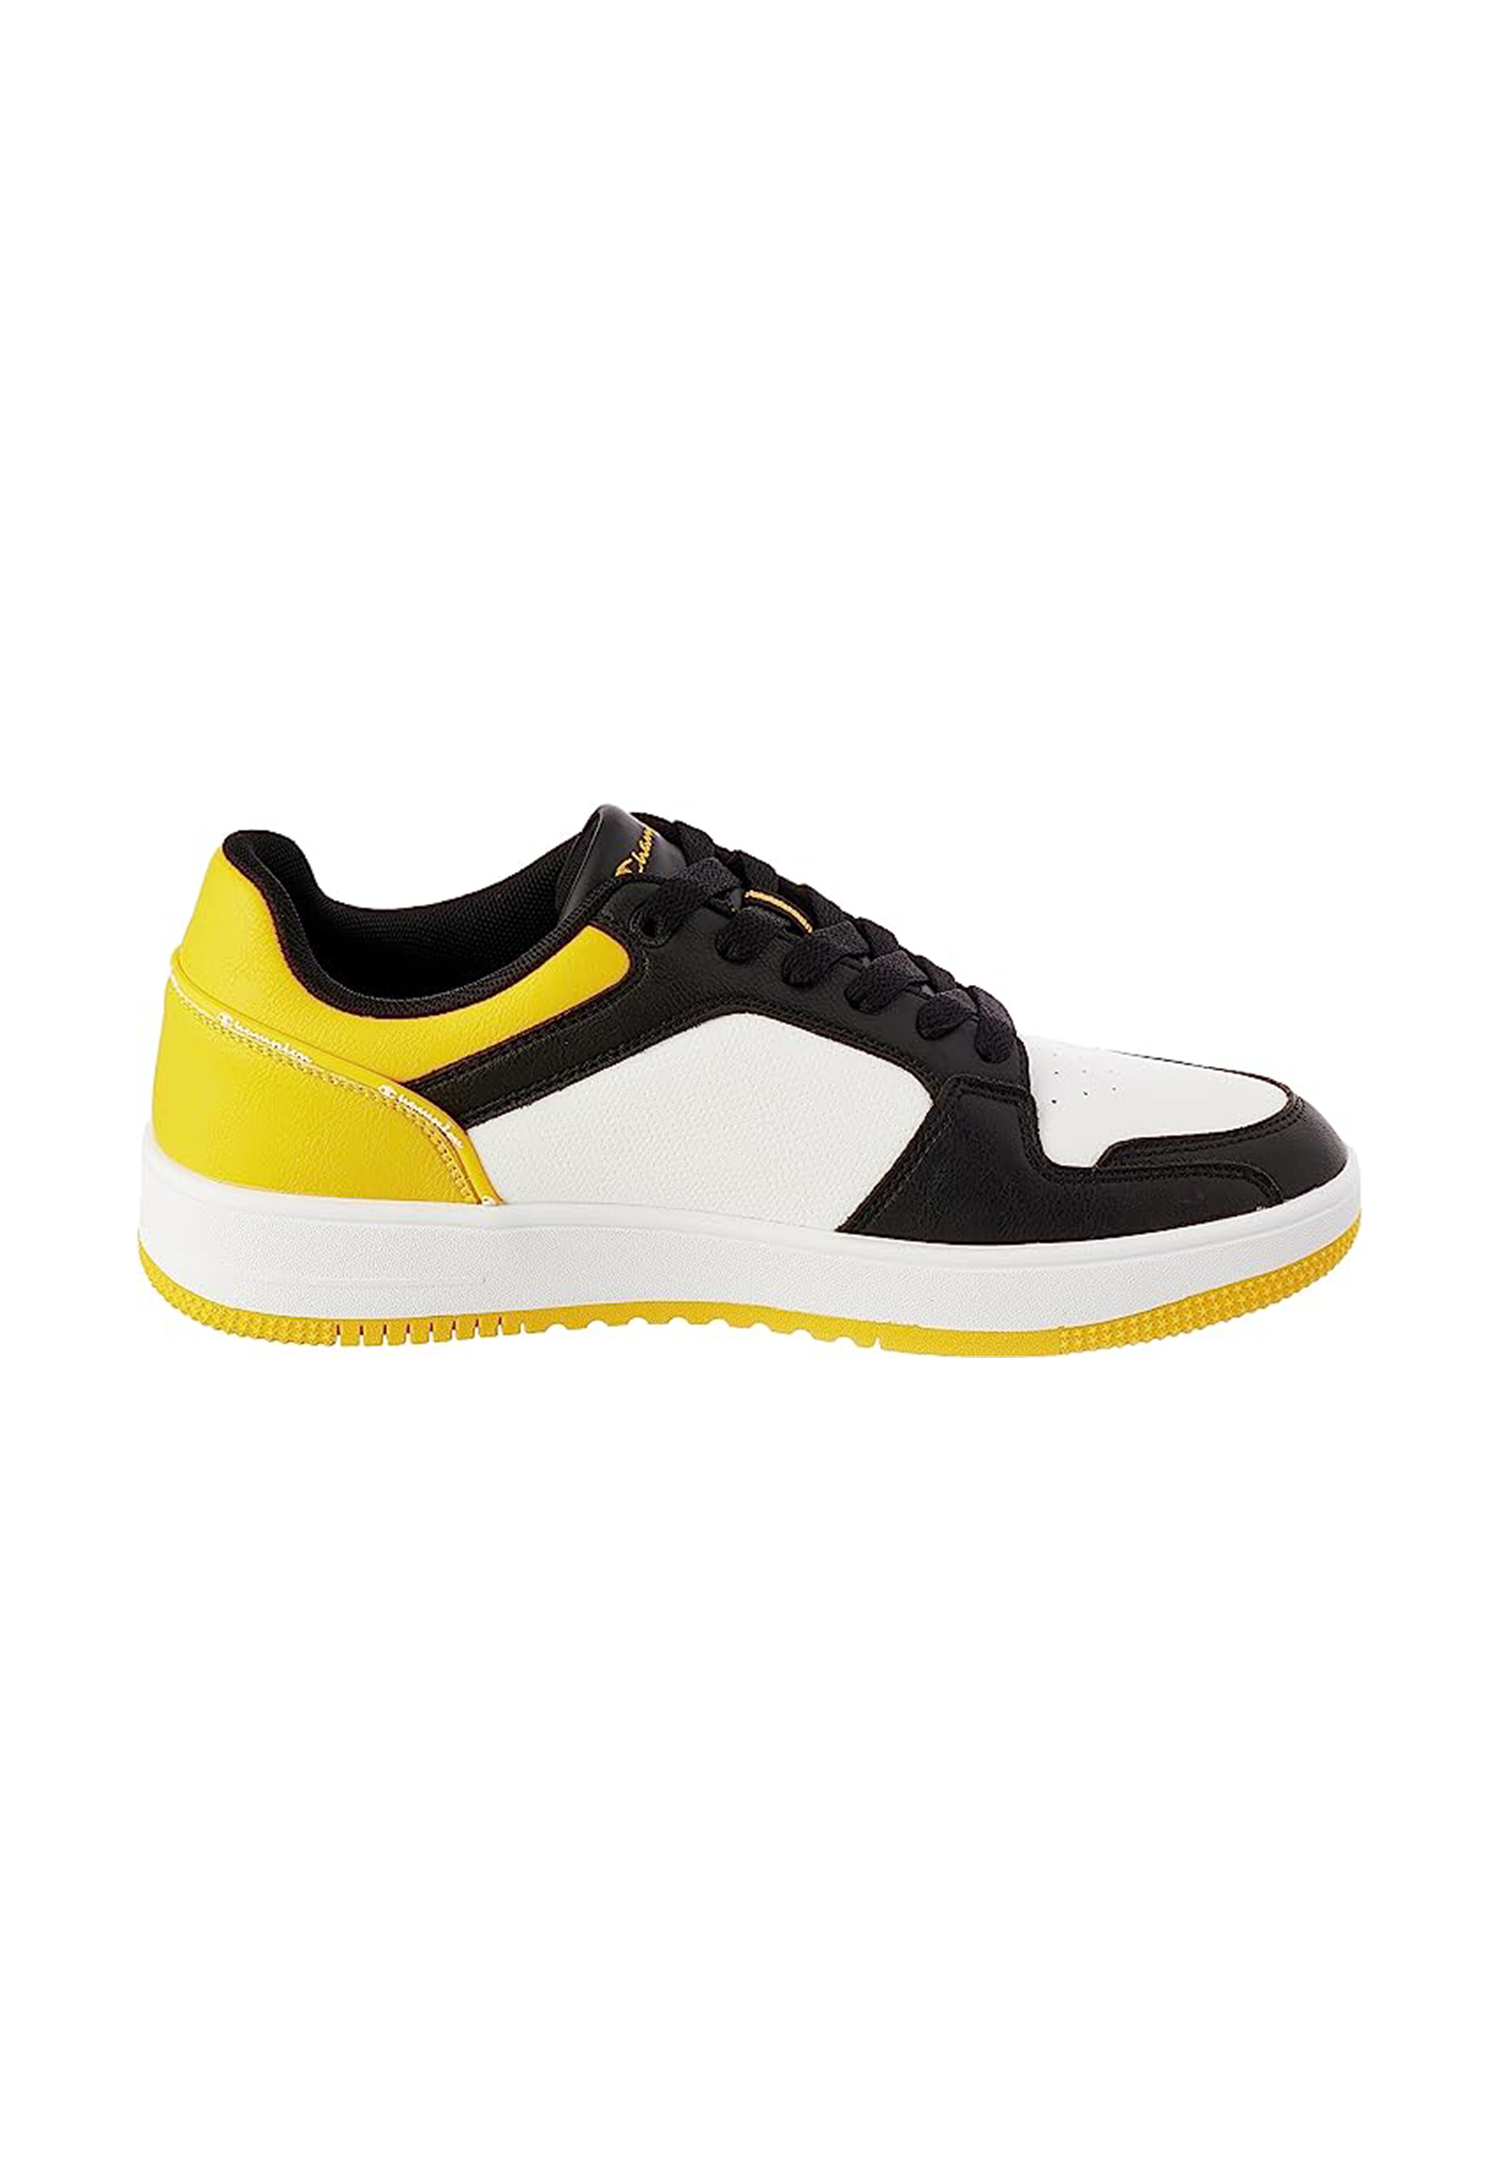 Champion REBOUND 2.0 LOW Herren Sneaker S21906-CHA-WW013 weiß/schwarz/gelb